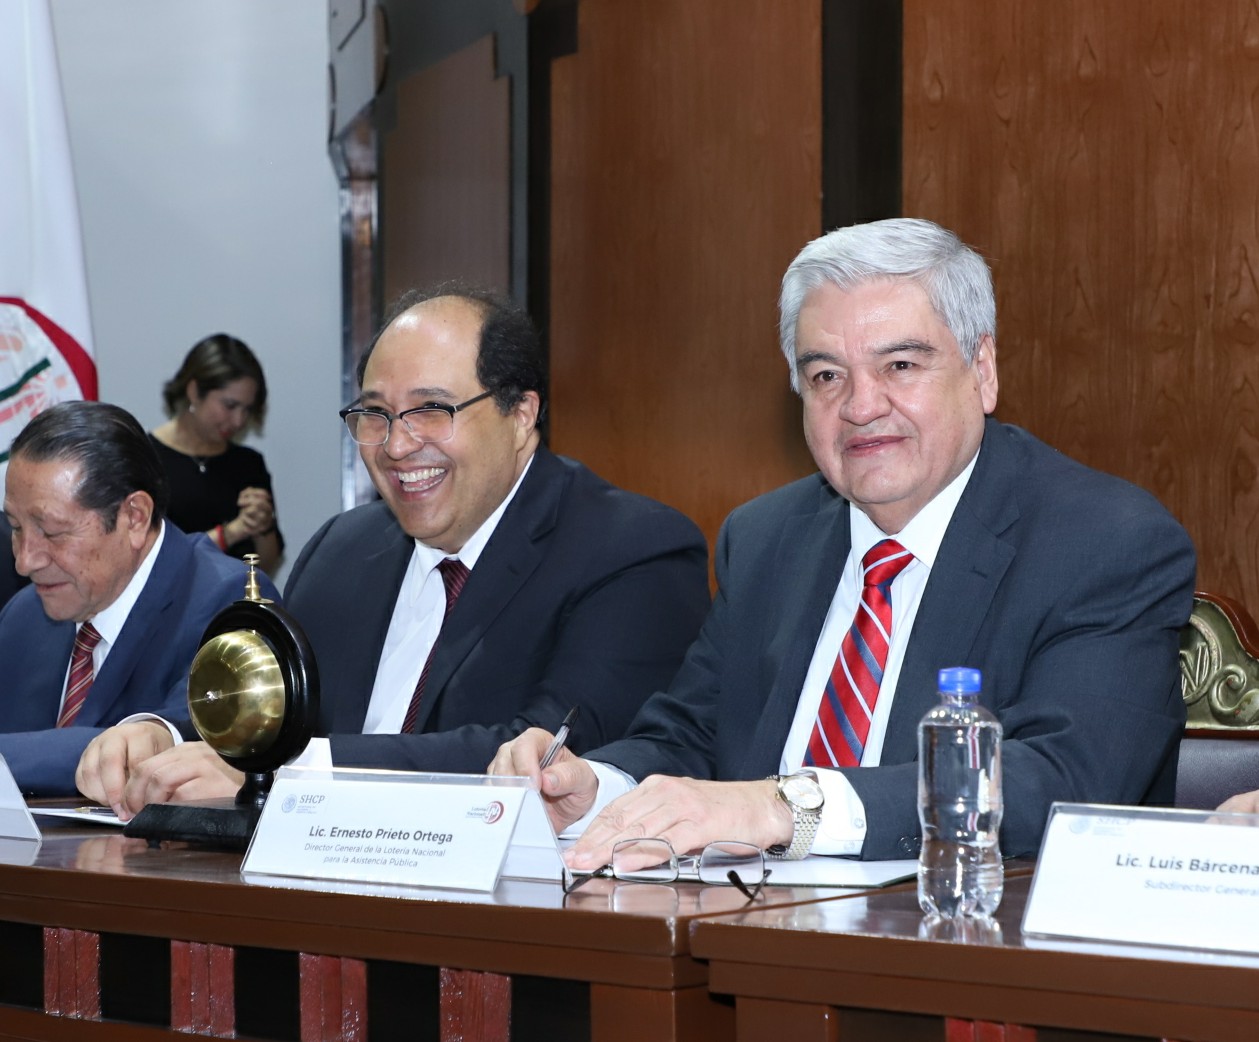 Fotografía donde se ven sentados en la mesa del presidium a Lázaro Cárdenas Batel y Ernesto Prieto Ortega, presenciando el sorteo.